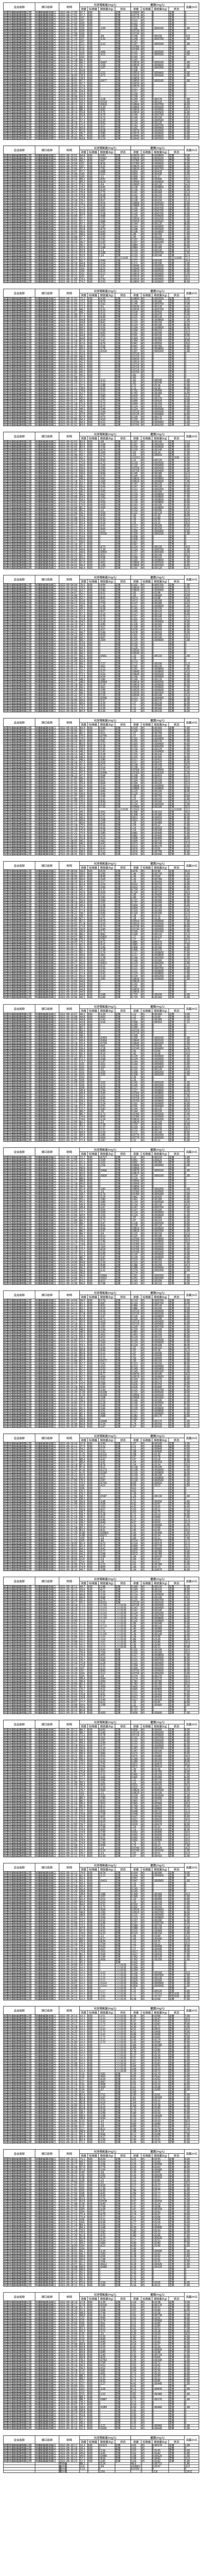 東營華源新能源有限公司第三季度檢測信息公示(圖19)